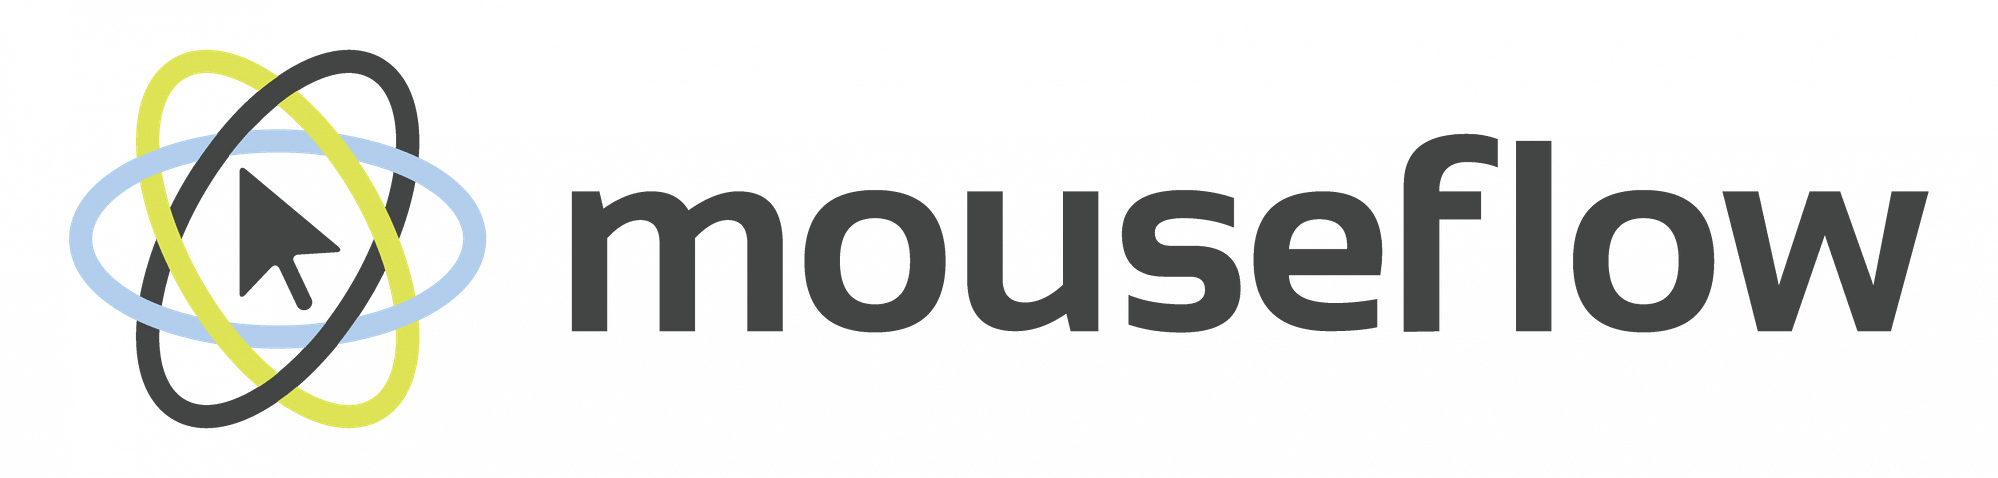 mouseflow logo 2